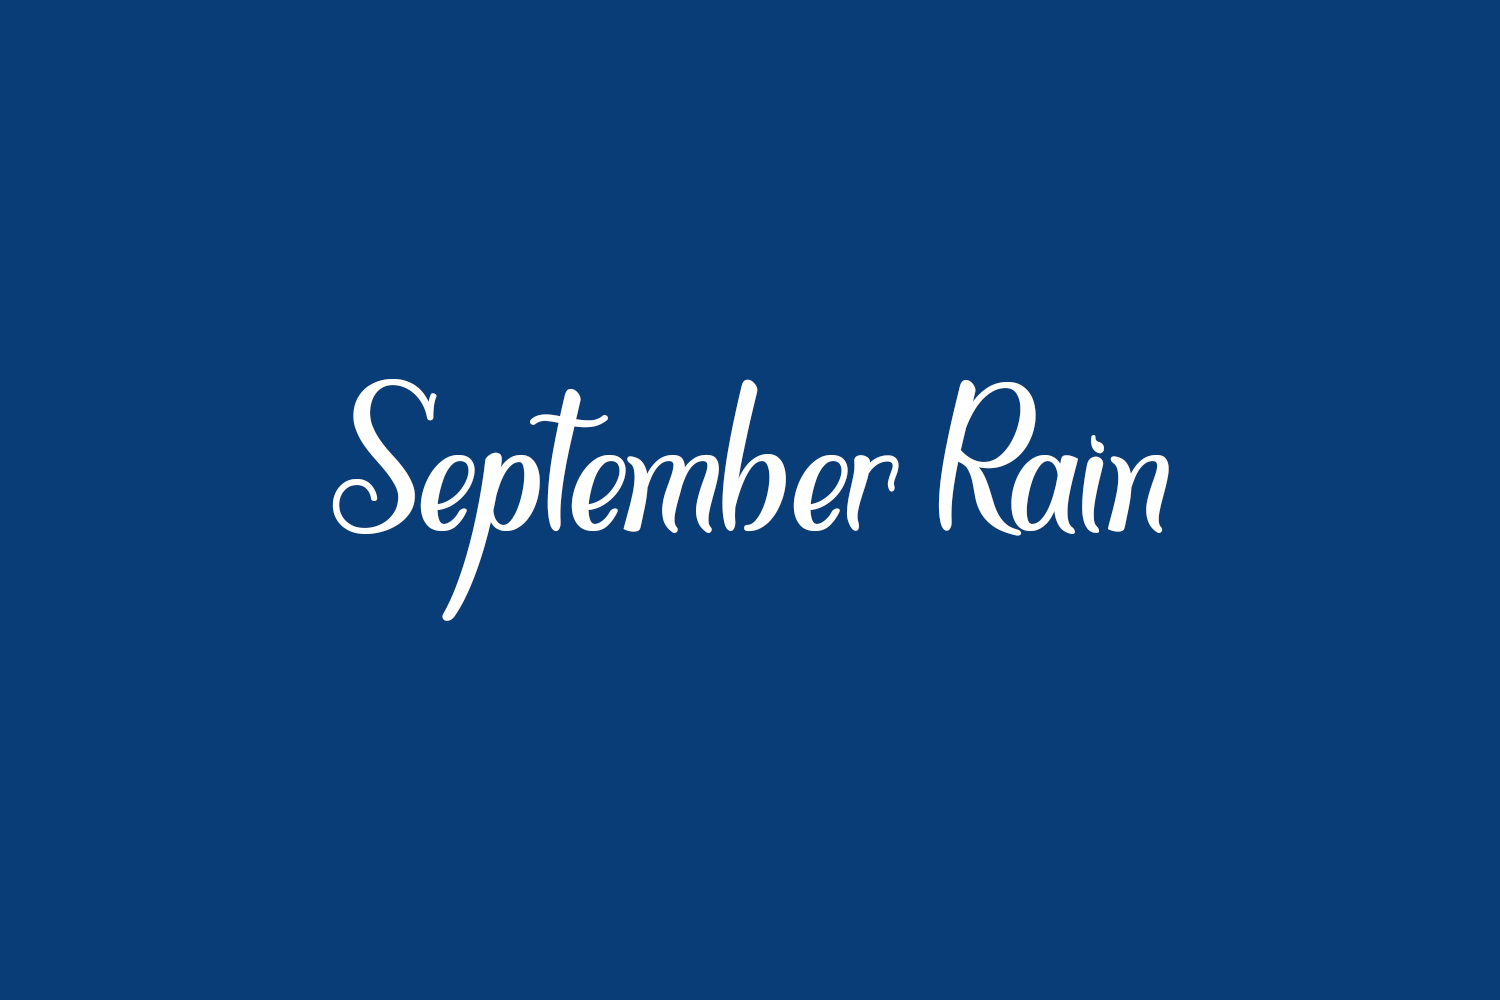 September Rain Free Font